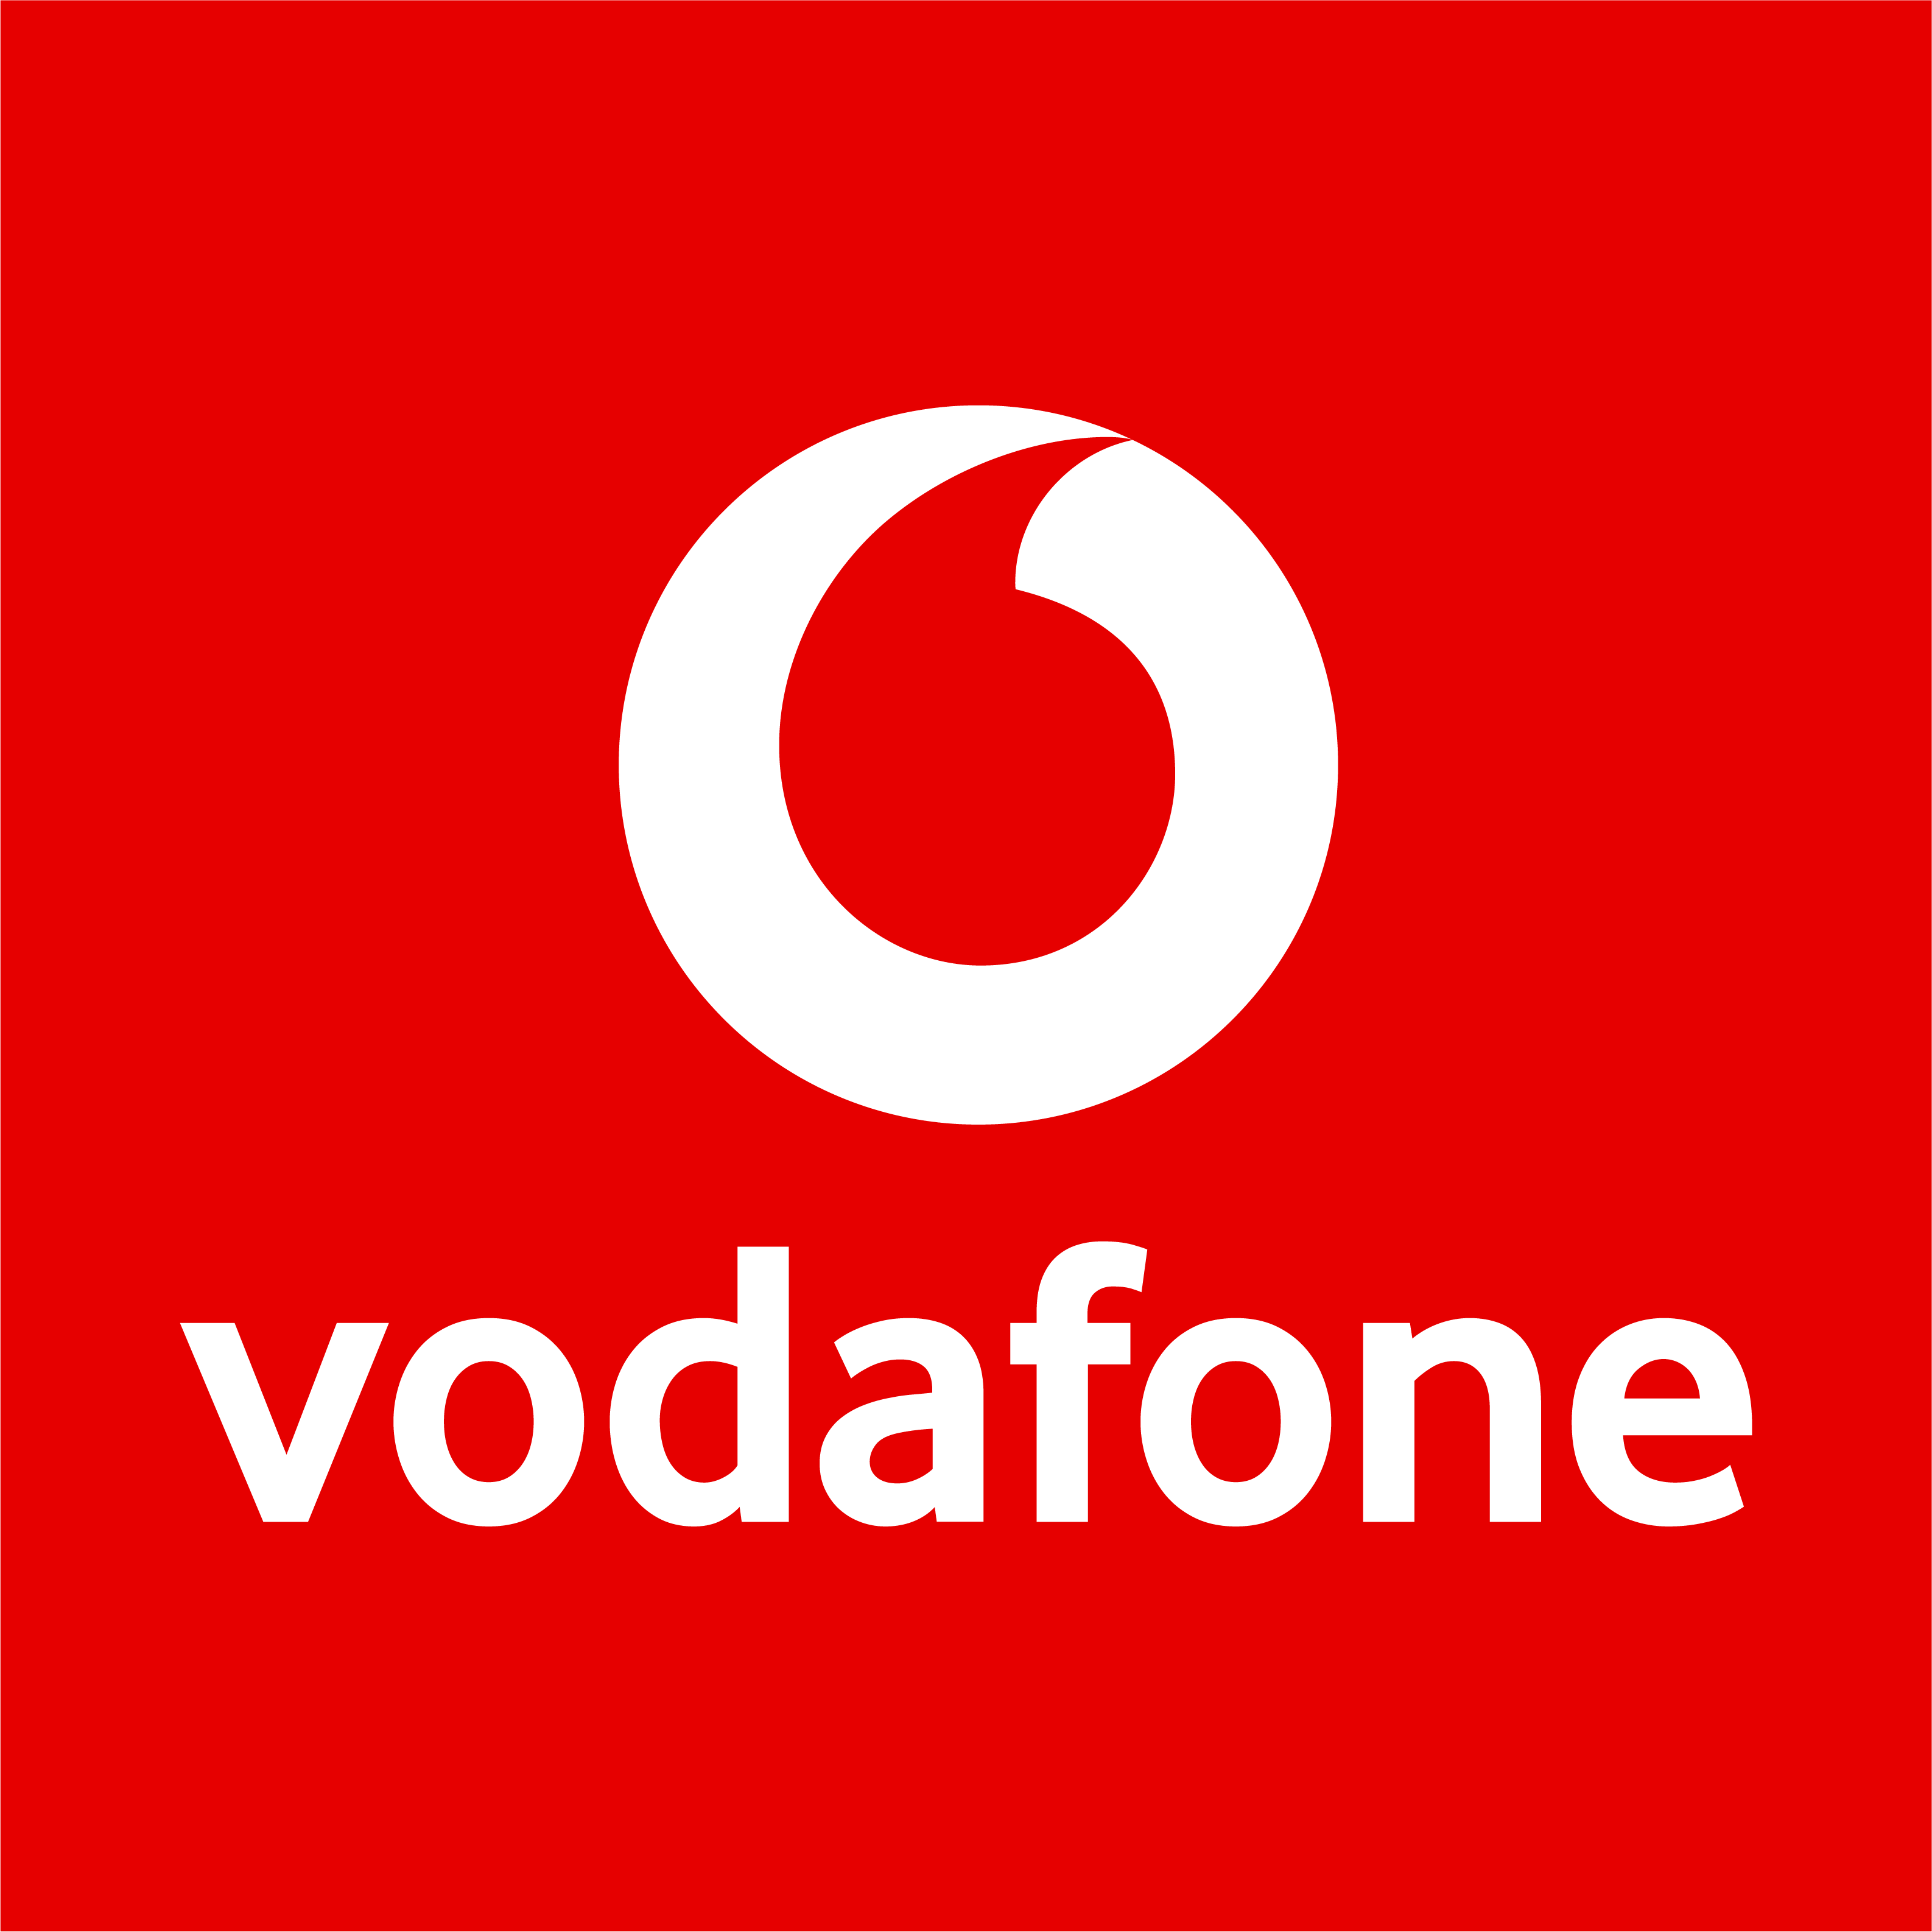 Vodafone Shop (geschlossen) in Mülheim an der Ruhr - Logo